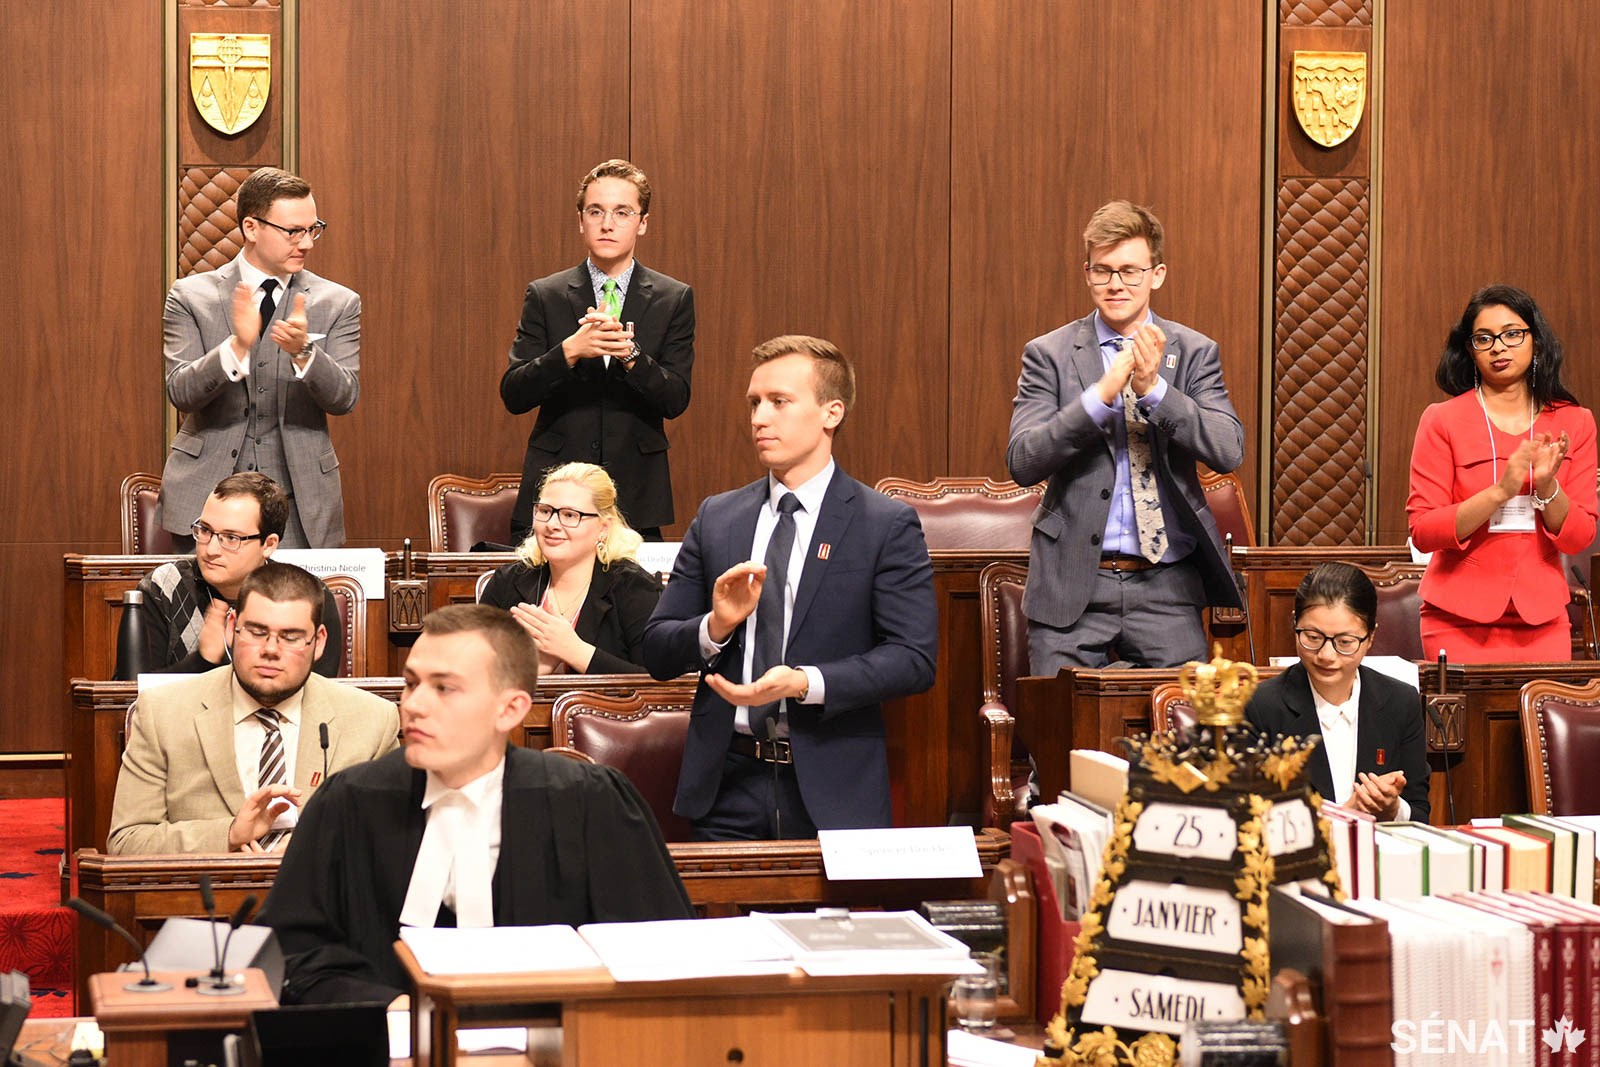 Des participants qui personnifient des sénateurs applaudissent l’intervention d’un collègue pendant une séance de la simulation du Sénat.